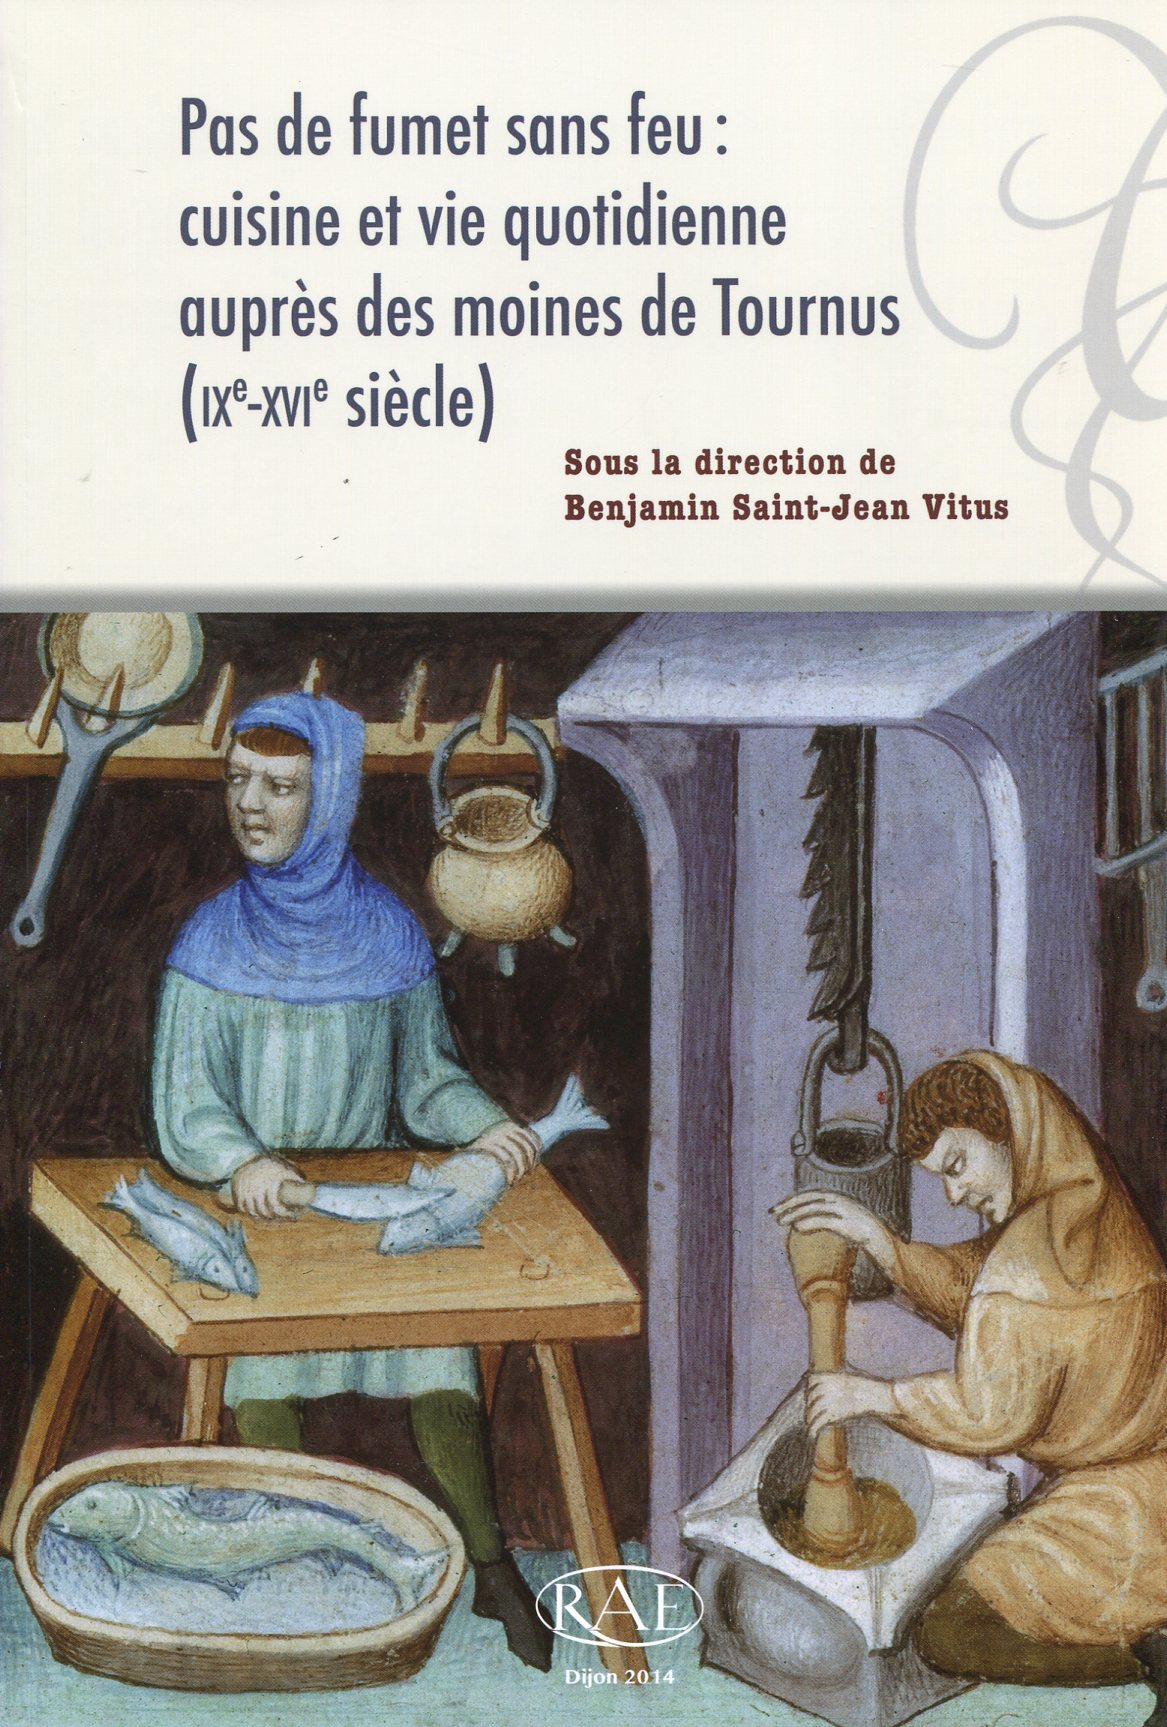 ÉPUISÉ - Pas de fumet sans feu : cuisine et vie quotidienne auprès des moines de Tournus (IXe-XVIe s.), (Suppl. RAE 35), 2014, 180 p.